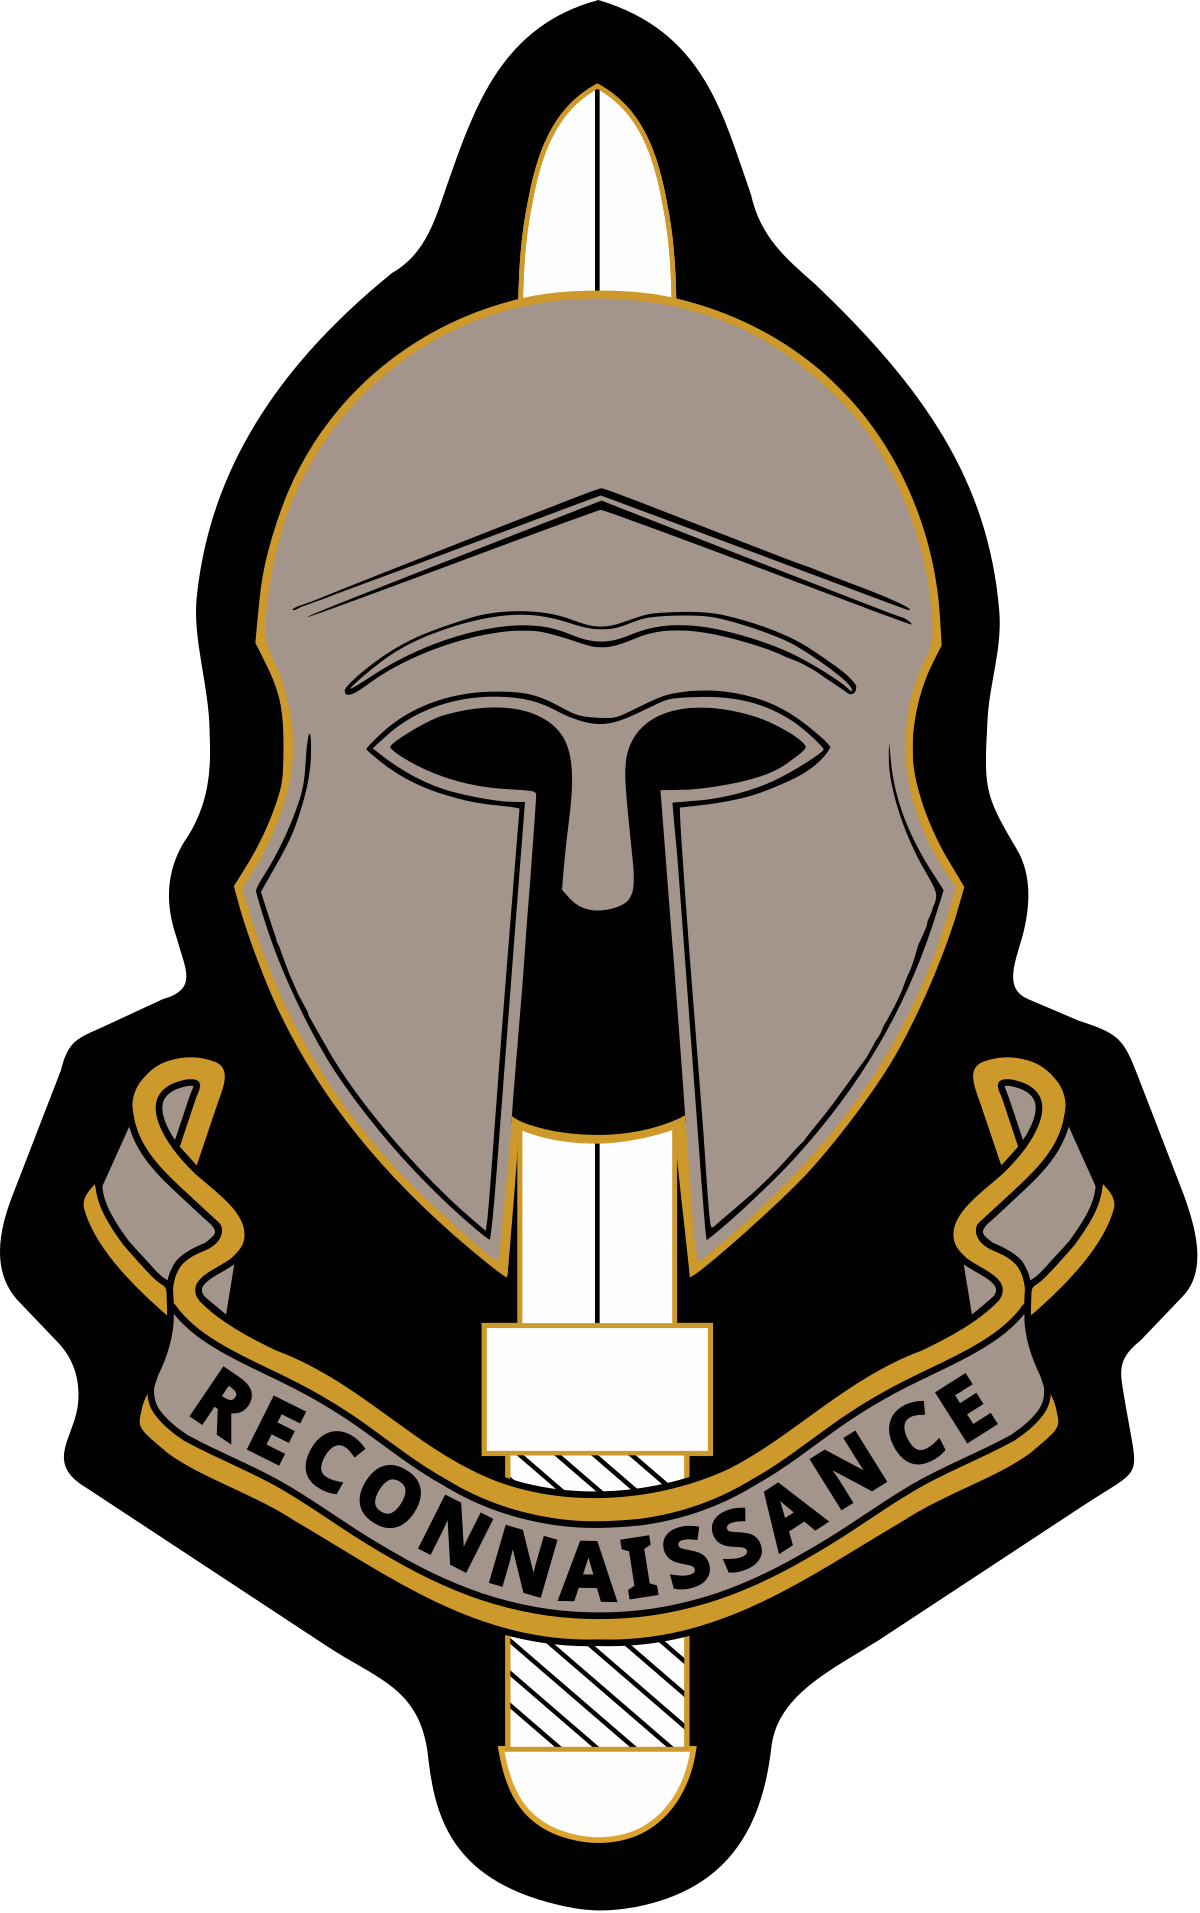 Reconnaissance Logo - Special Reconnaissance Regiment